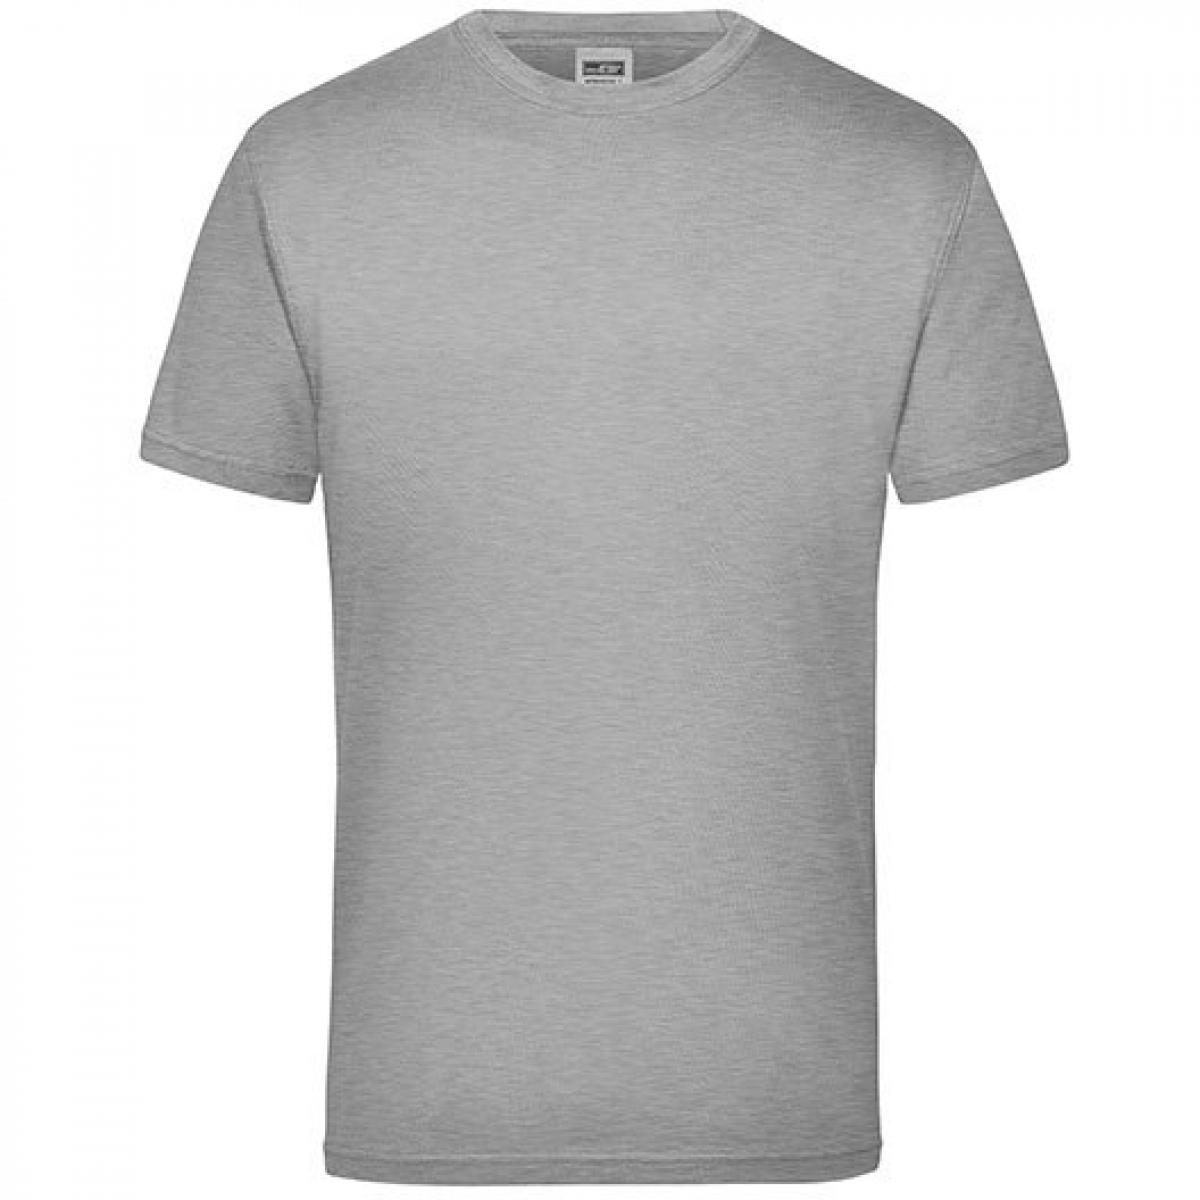 Hersteller: James+Nicholson Herstellernummer: JN 800 Artikelbezeichnung: Workwear Herren T-Shirt - waschbar bis 60 °C Farbe: Grey Heather